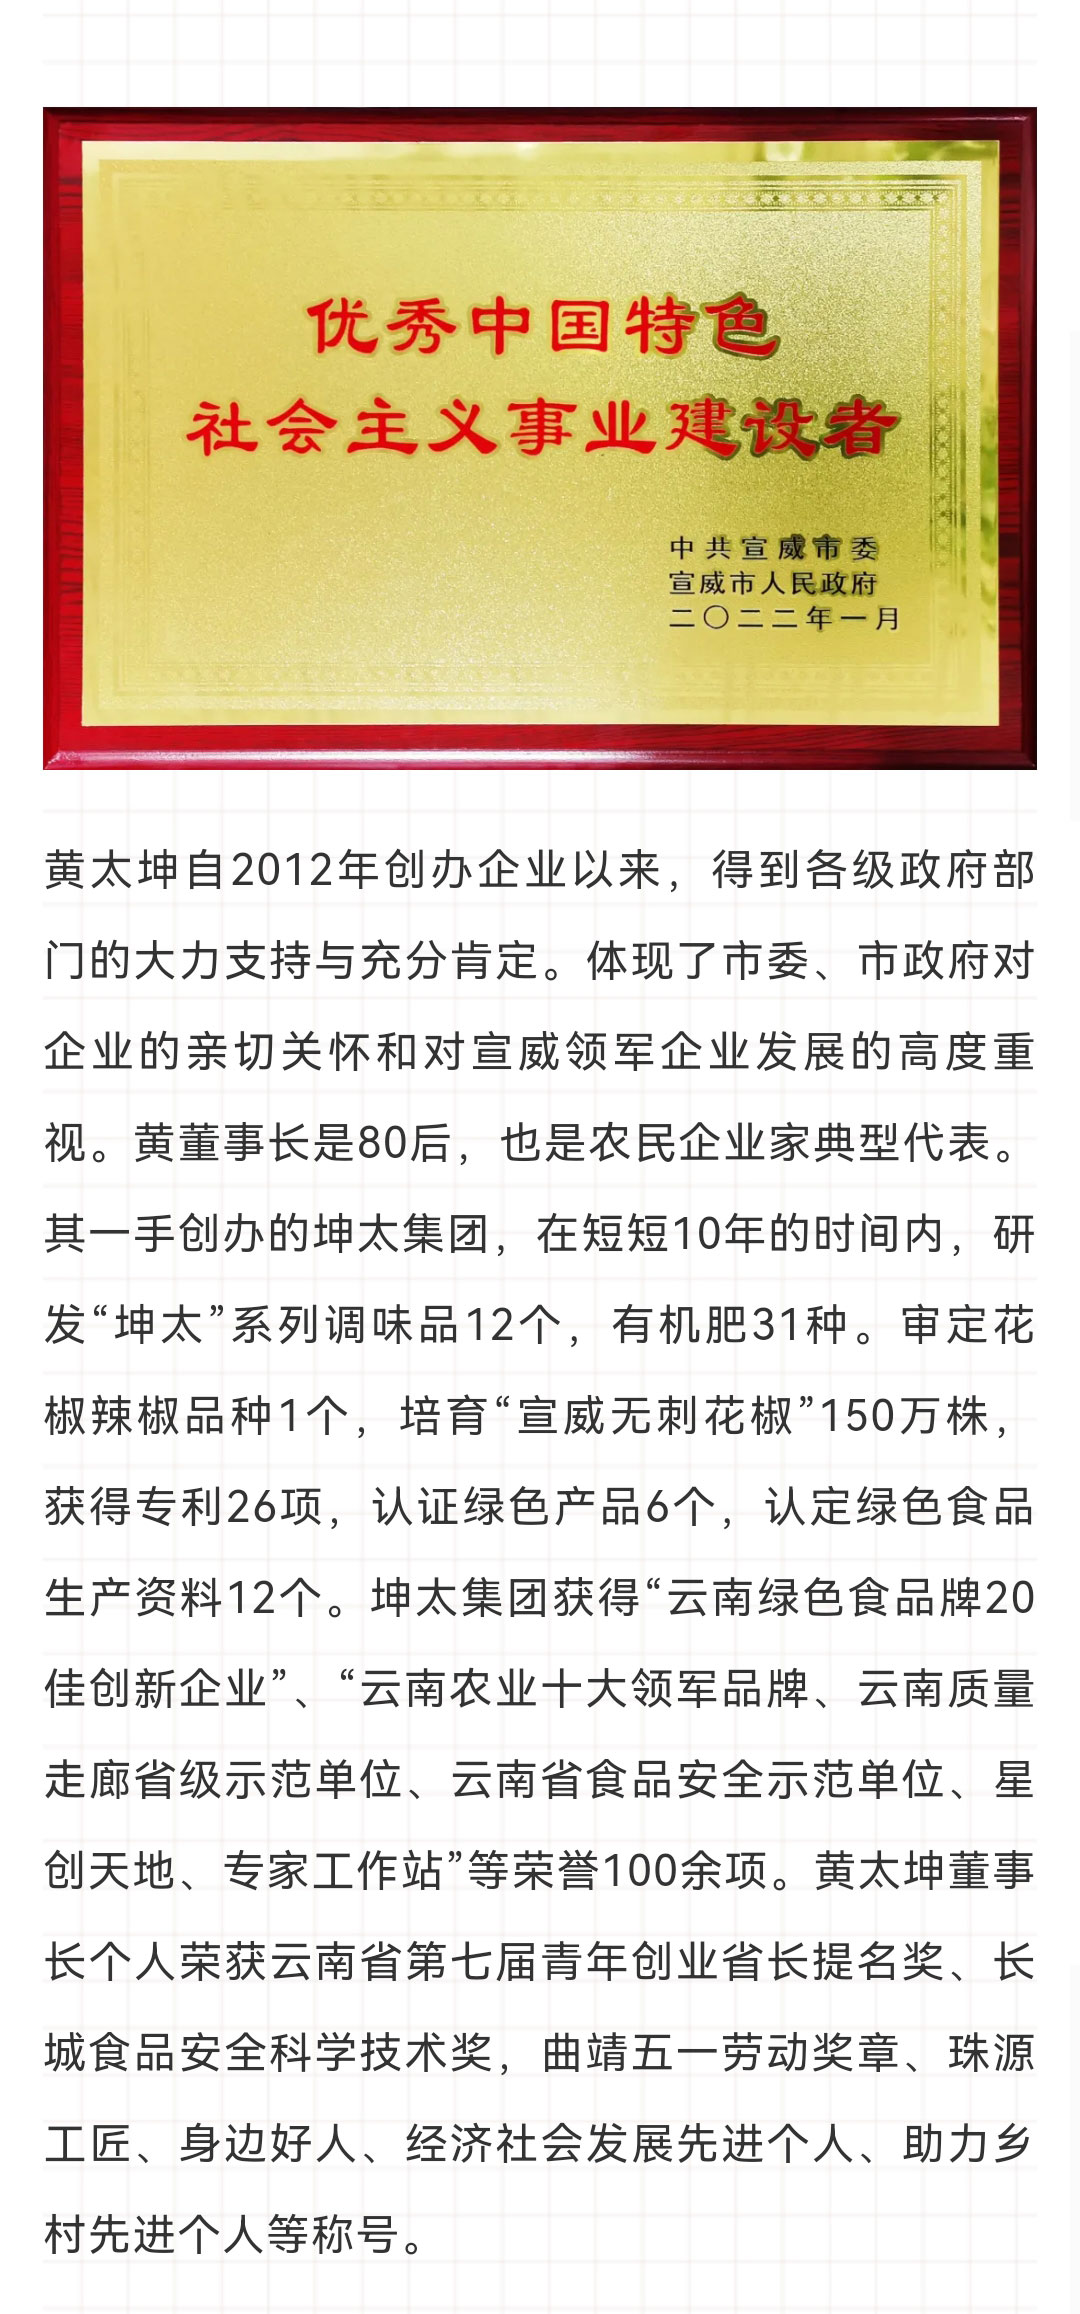 黄太坤荣获优秀中国特色社会主义事业建设者称号_02.jpg